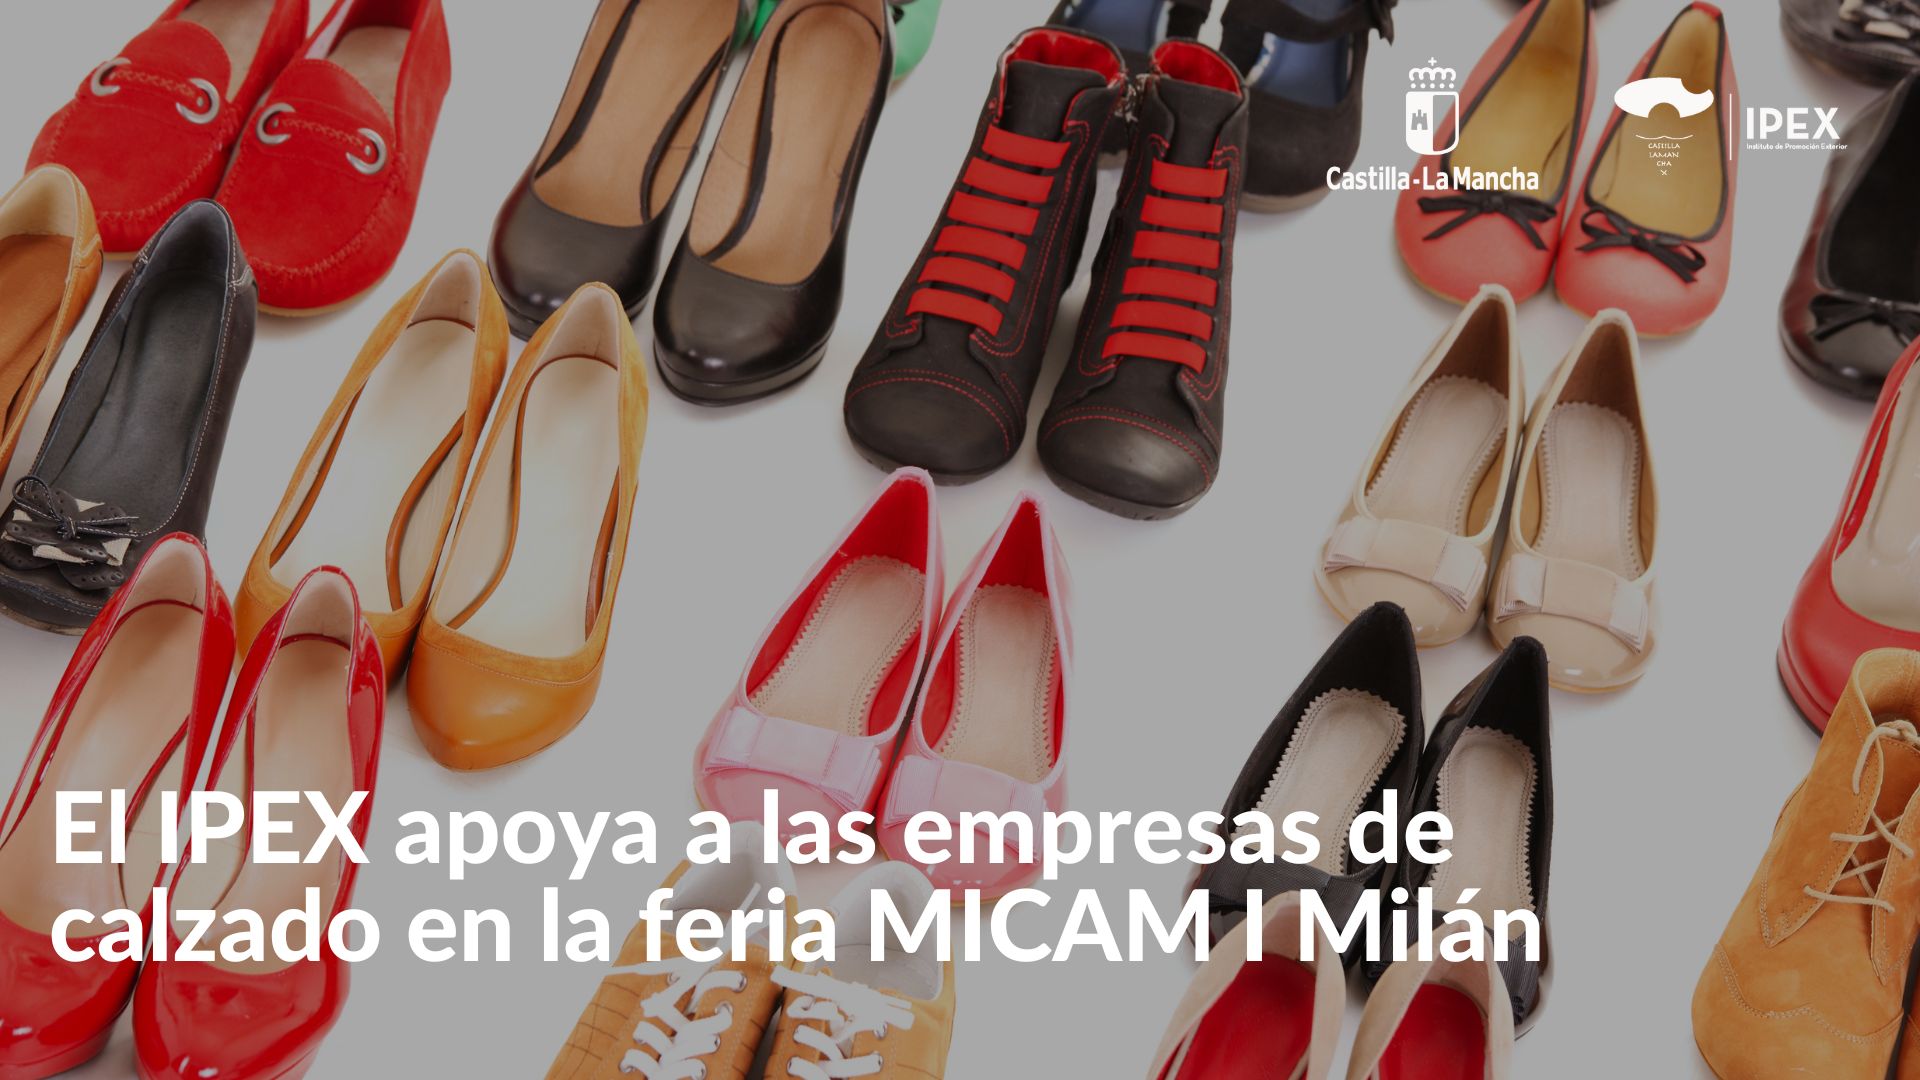 agenda Cien años línea El IPEX apoya a las empresas de calzado en la feria MICAM I Milán -  Instituto de Promoción Exterior de Castilla-La Mancha